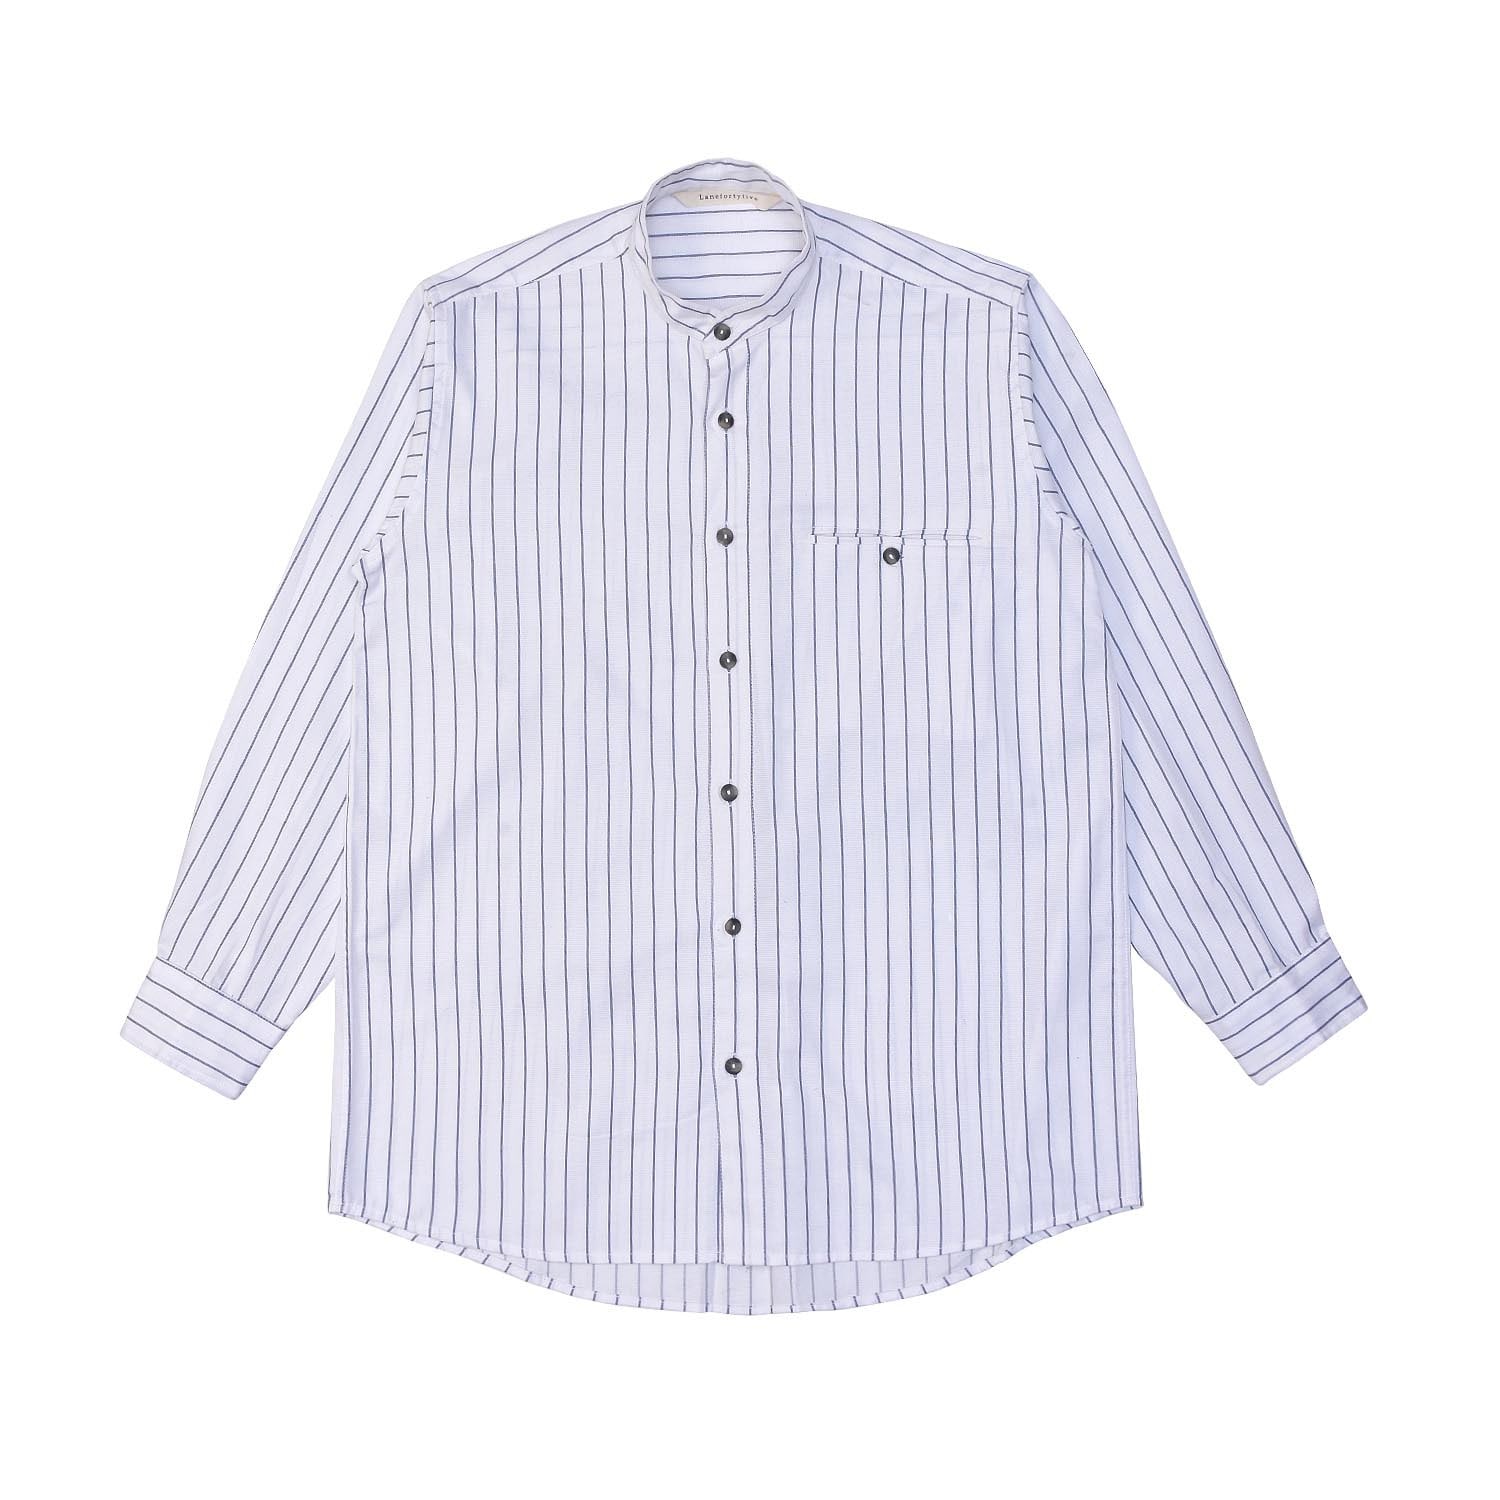 Bondurant Men's Shirt - White & Blue Stripes Small LaneFortyfive